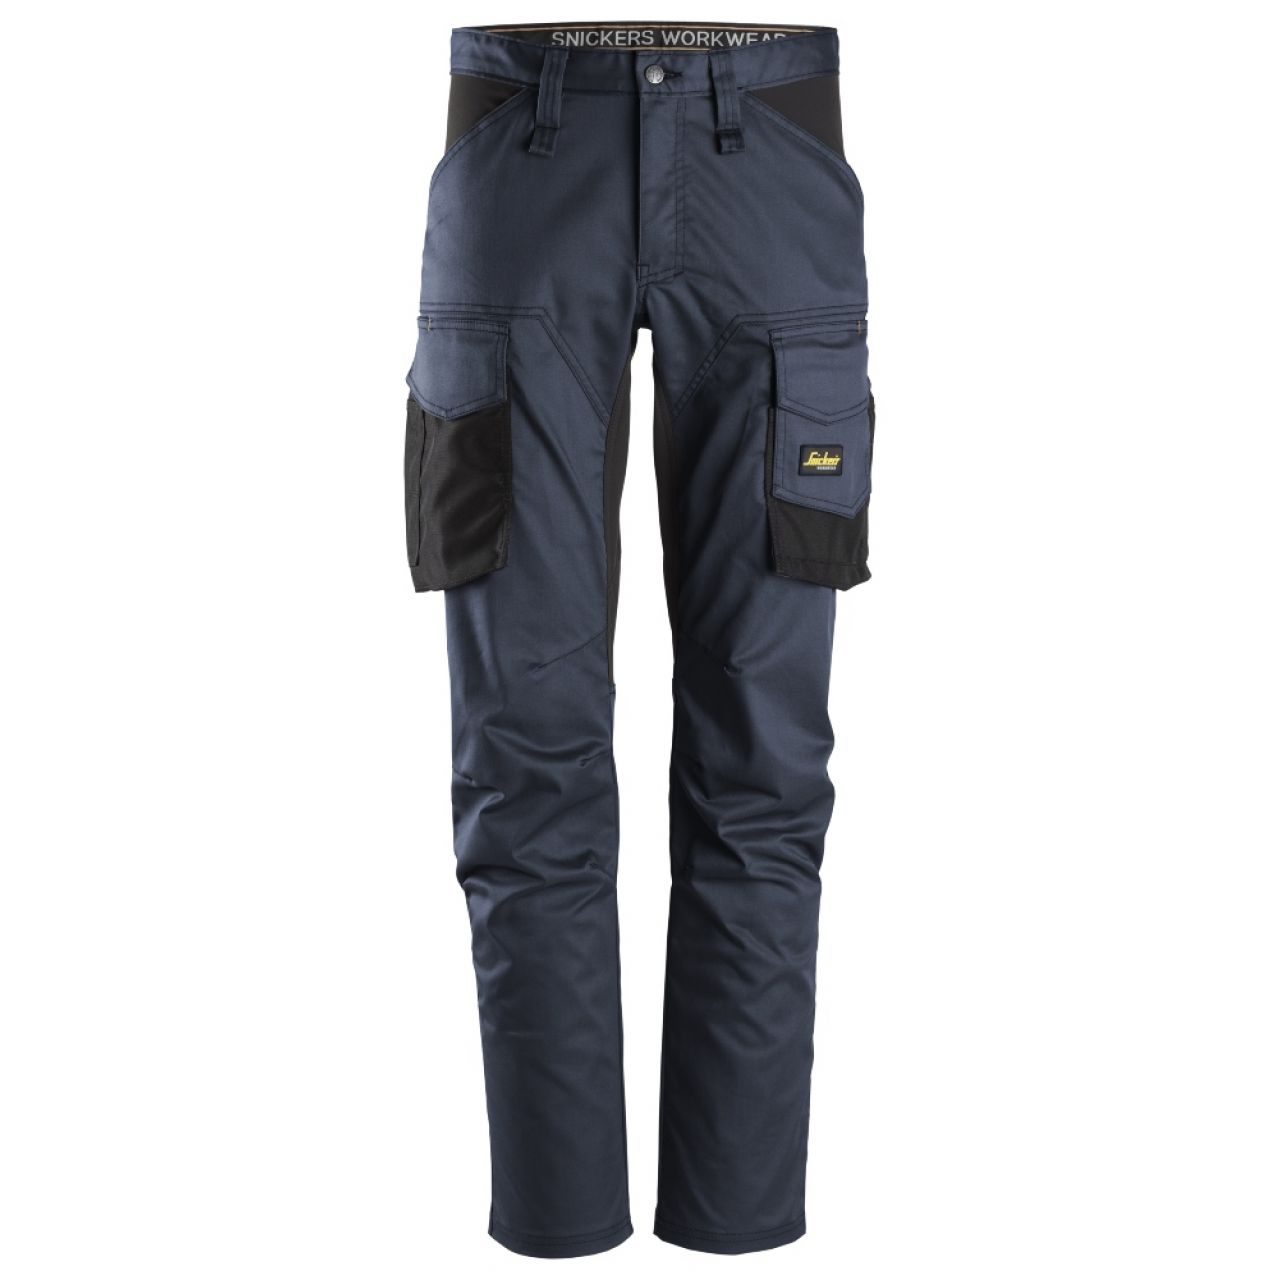 6803 Pantalones largos de trabajo elásticos sin bolsillos para las rodilleras AllroundWork azul marino-negro talla 208